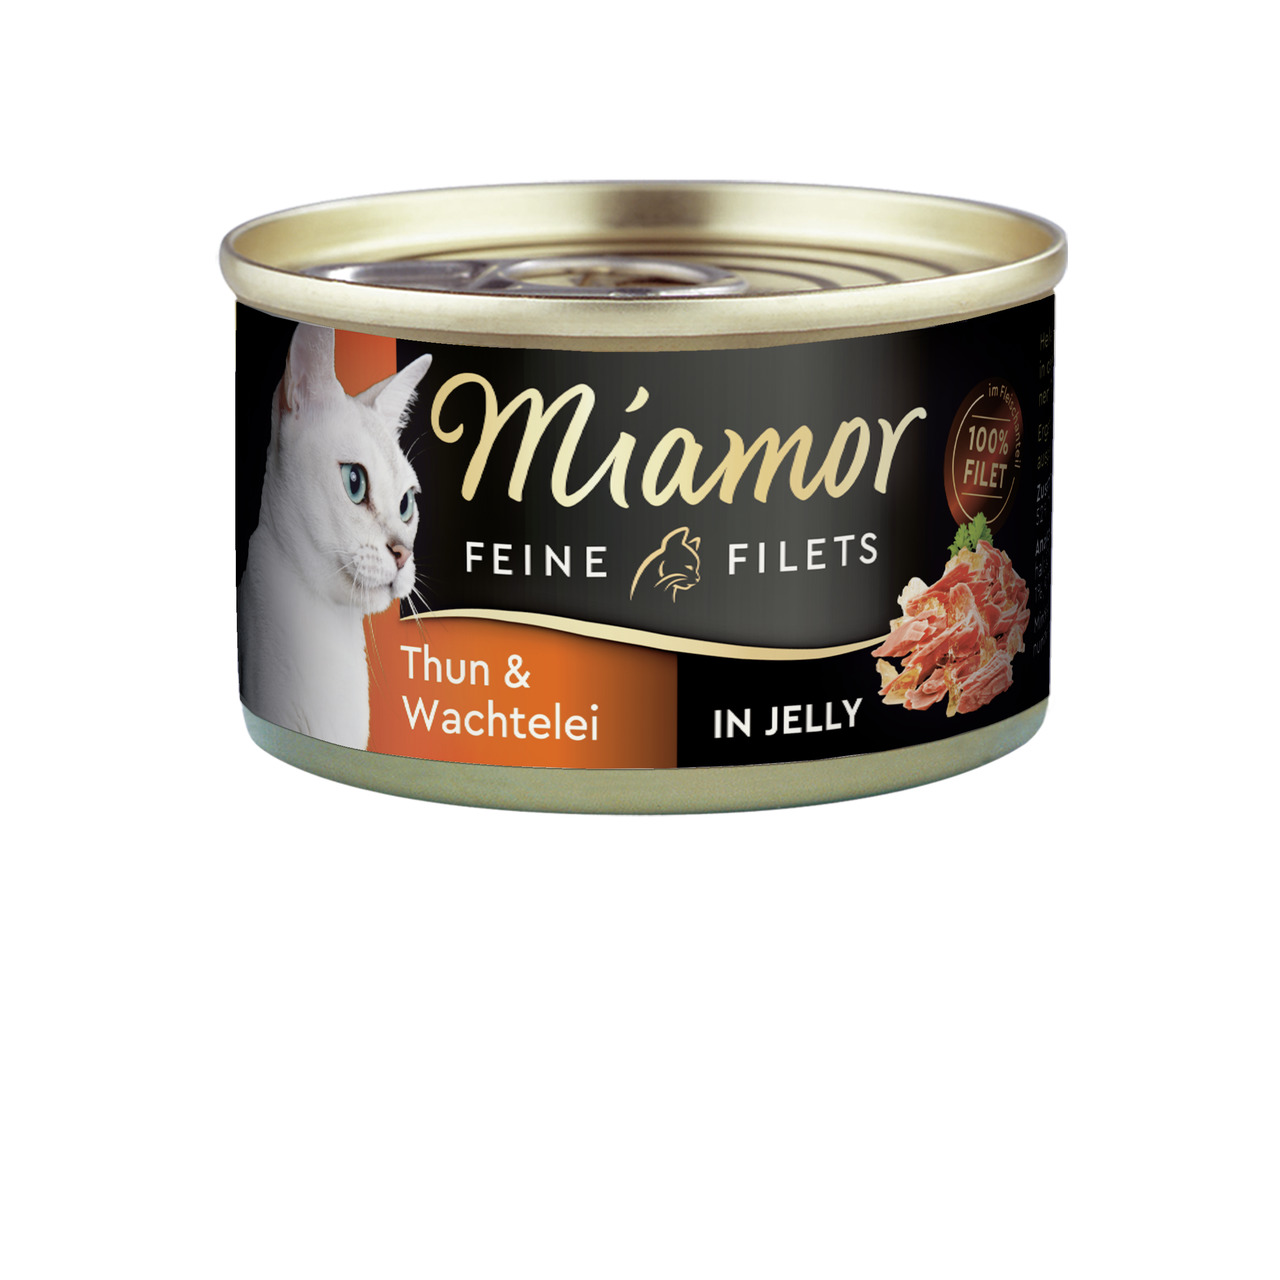 Miamor Feine Filets in Jelly Thun & Wachtelei Katzen Nassfutter 100 g